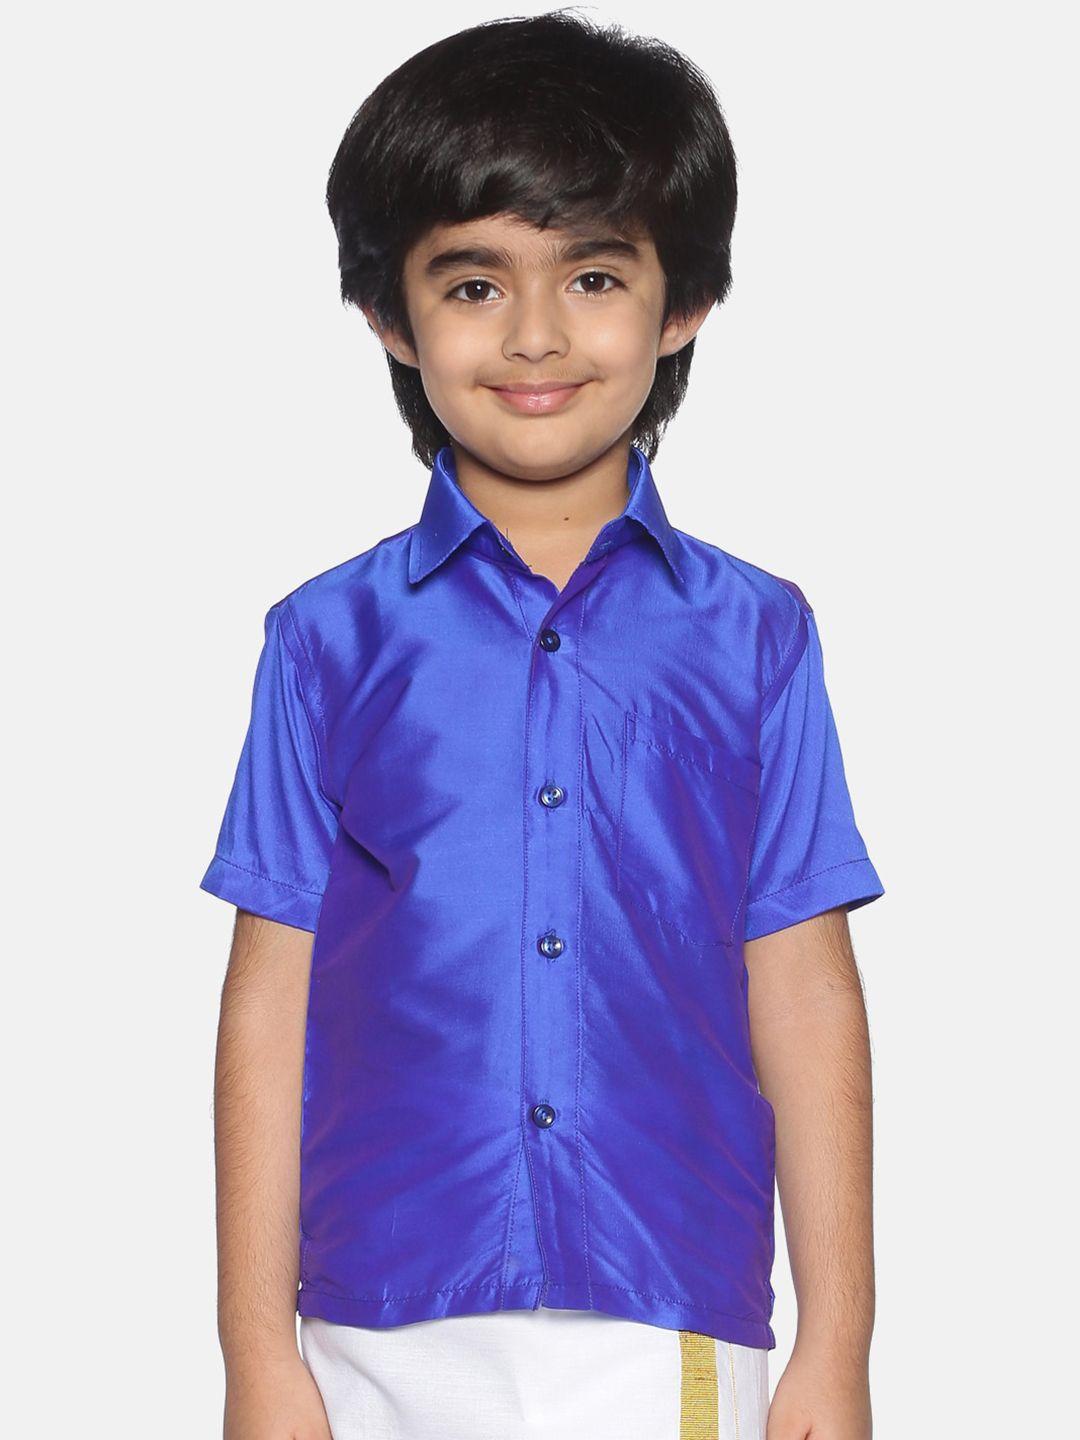 Sethukrishna Boys Shirt Collar Casual Shirt